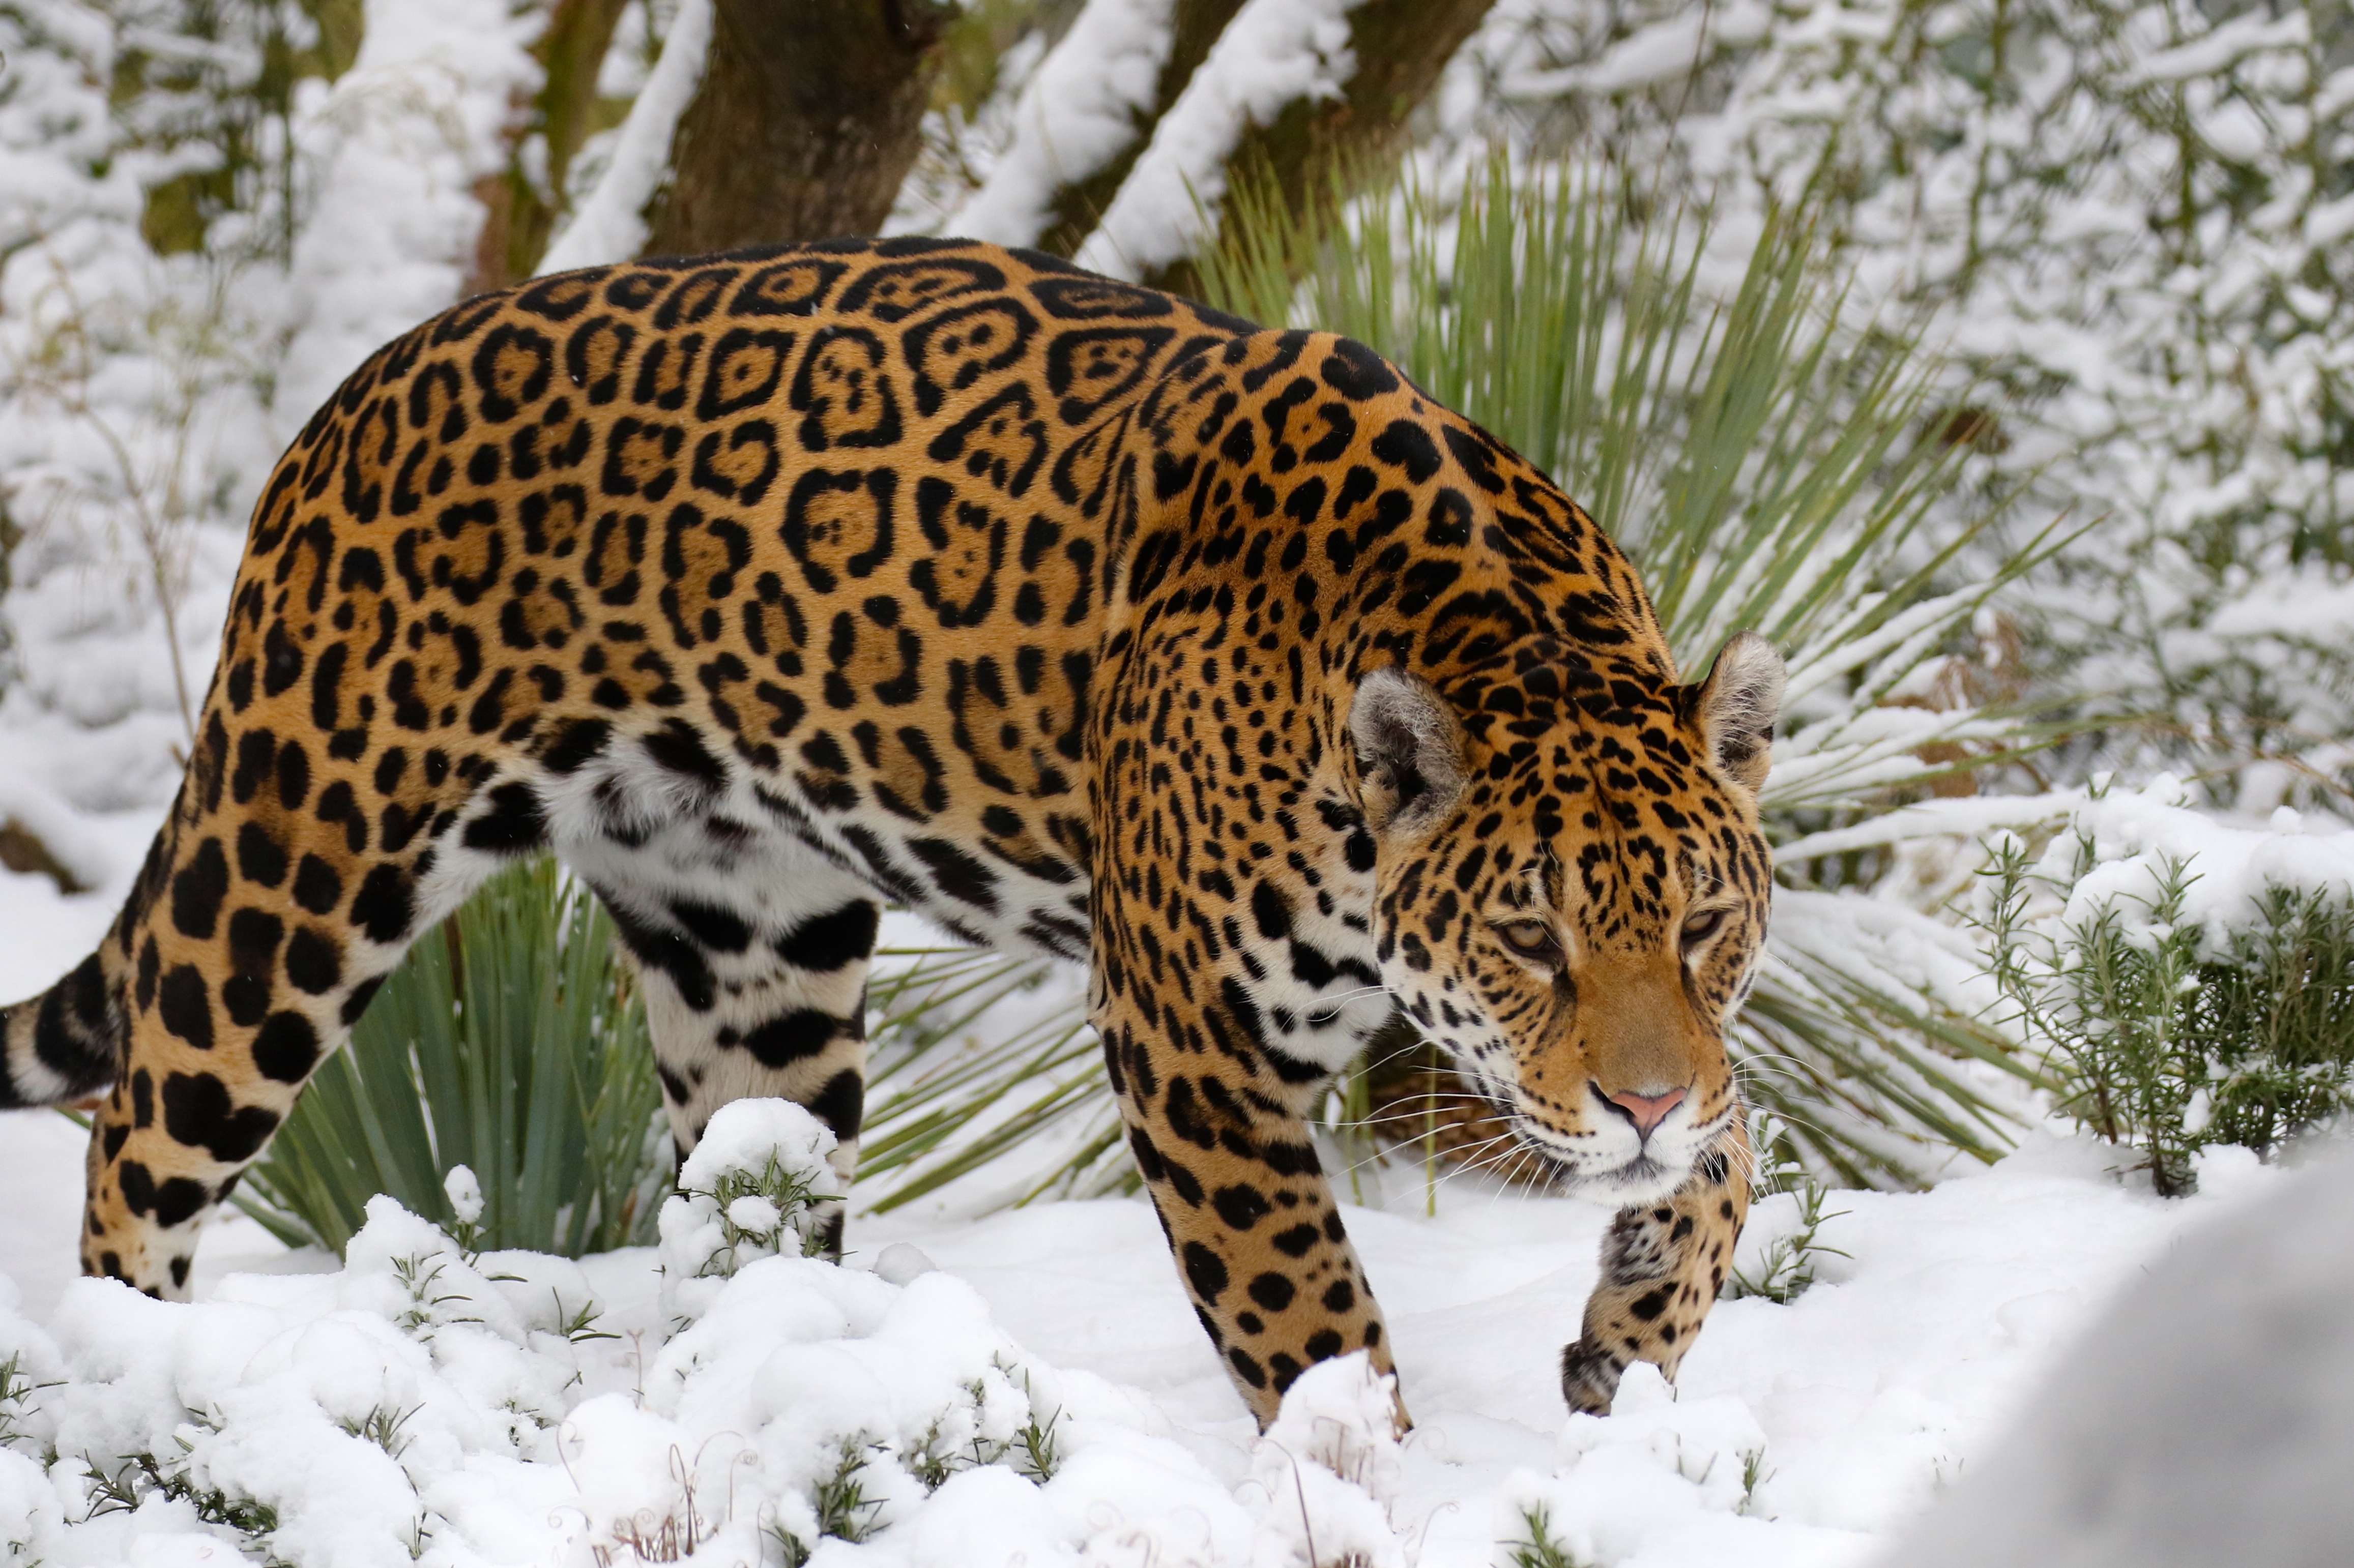 Descarga gratuita de fondo de pantalla para móvil de Animales, Invierno, Gatos, Nieve, Jaguar.